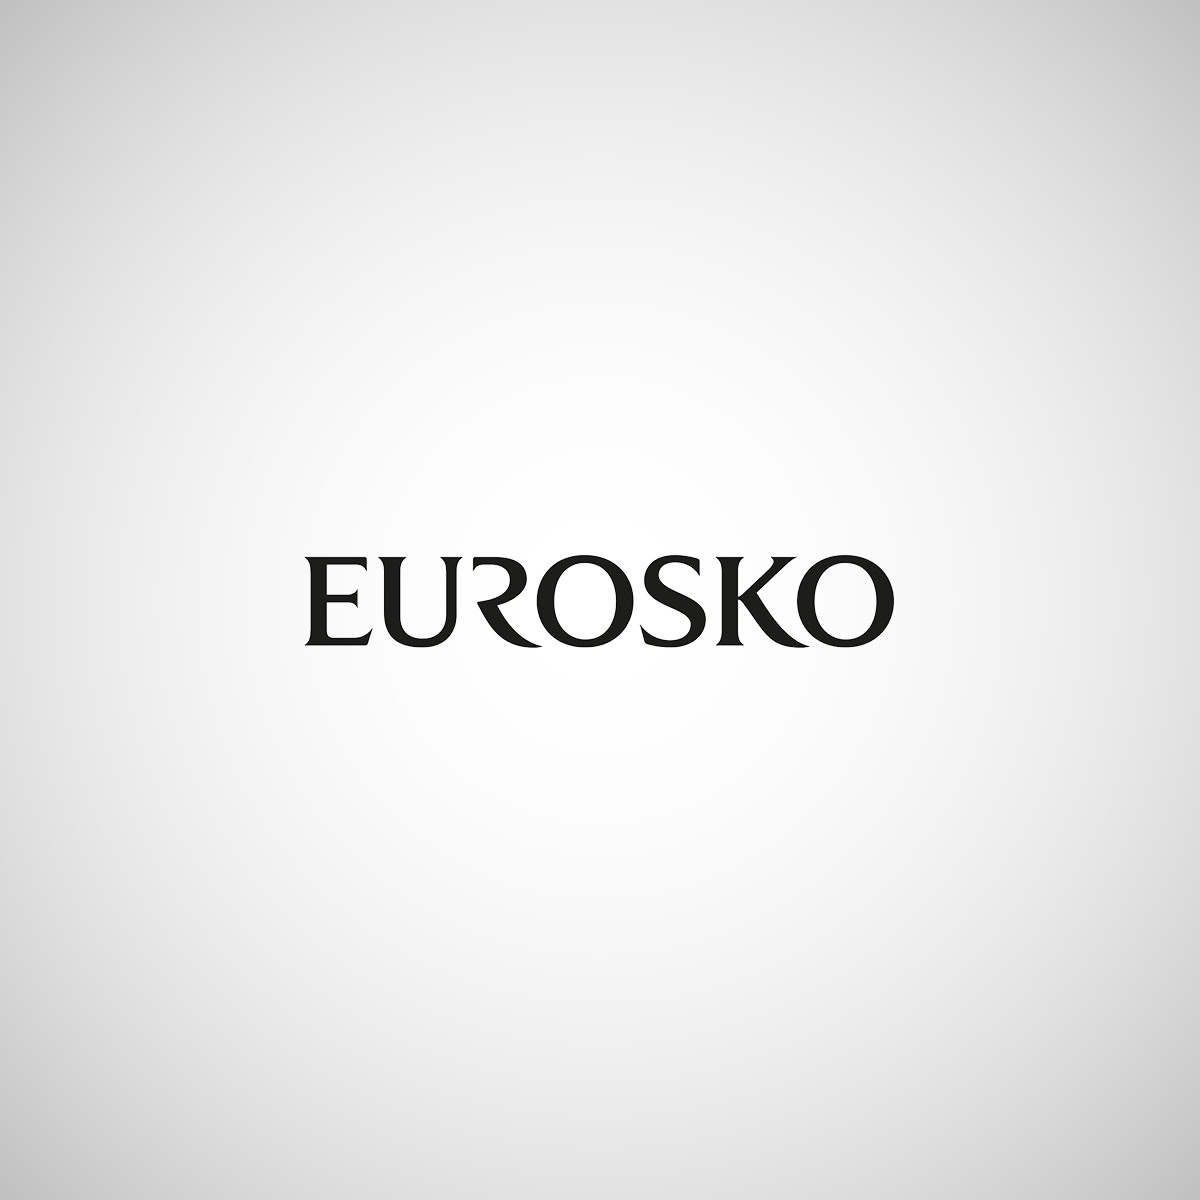 Eurosko_1200x1200.jpg